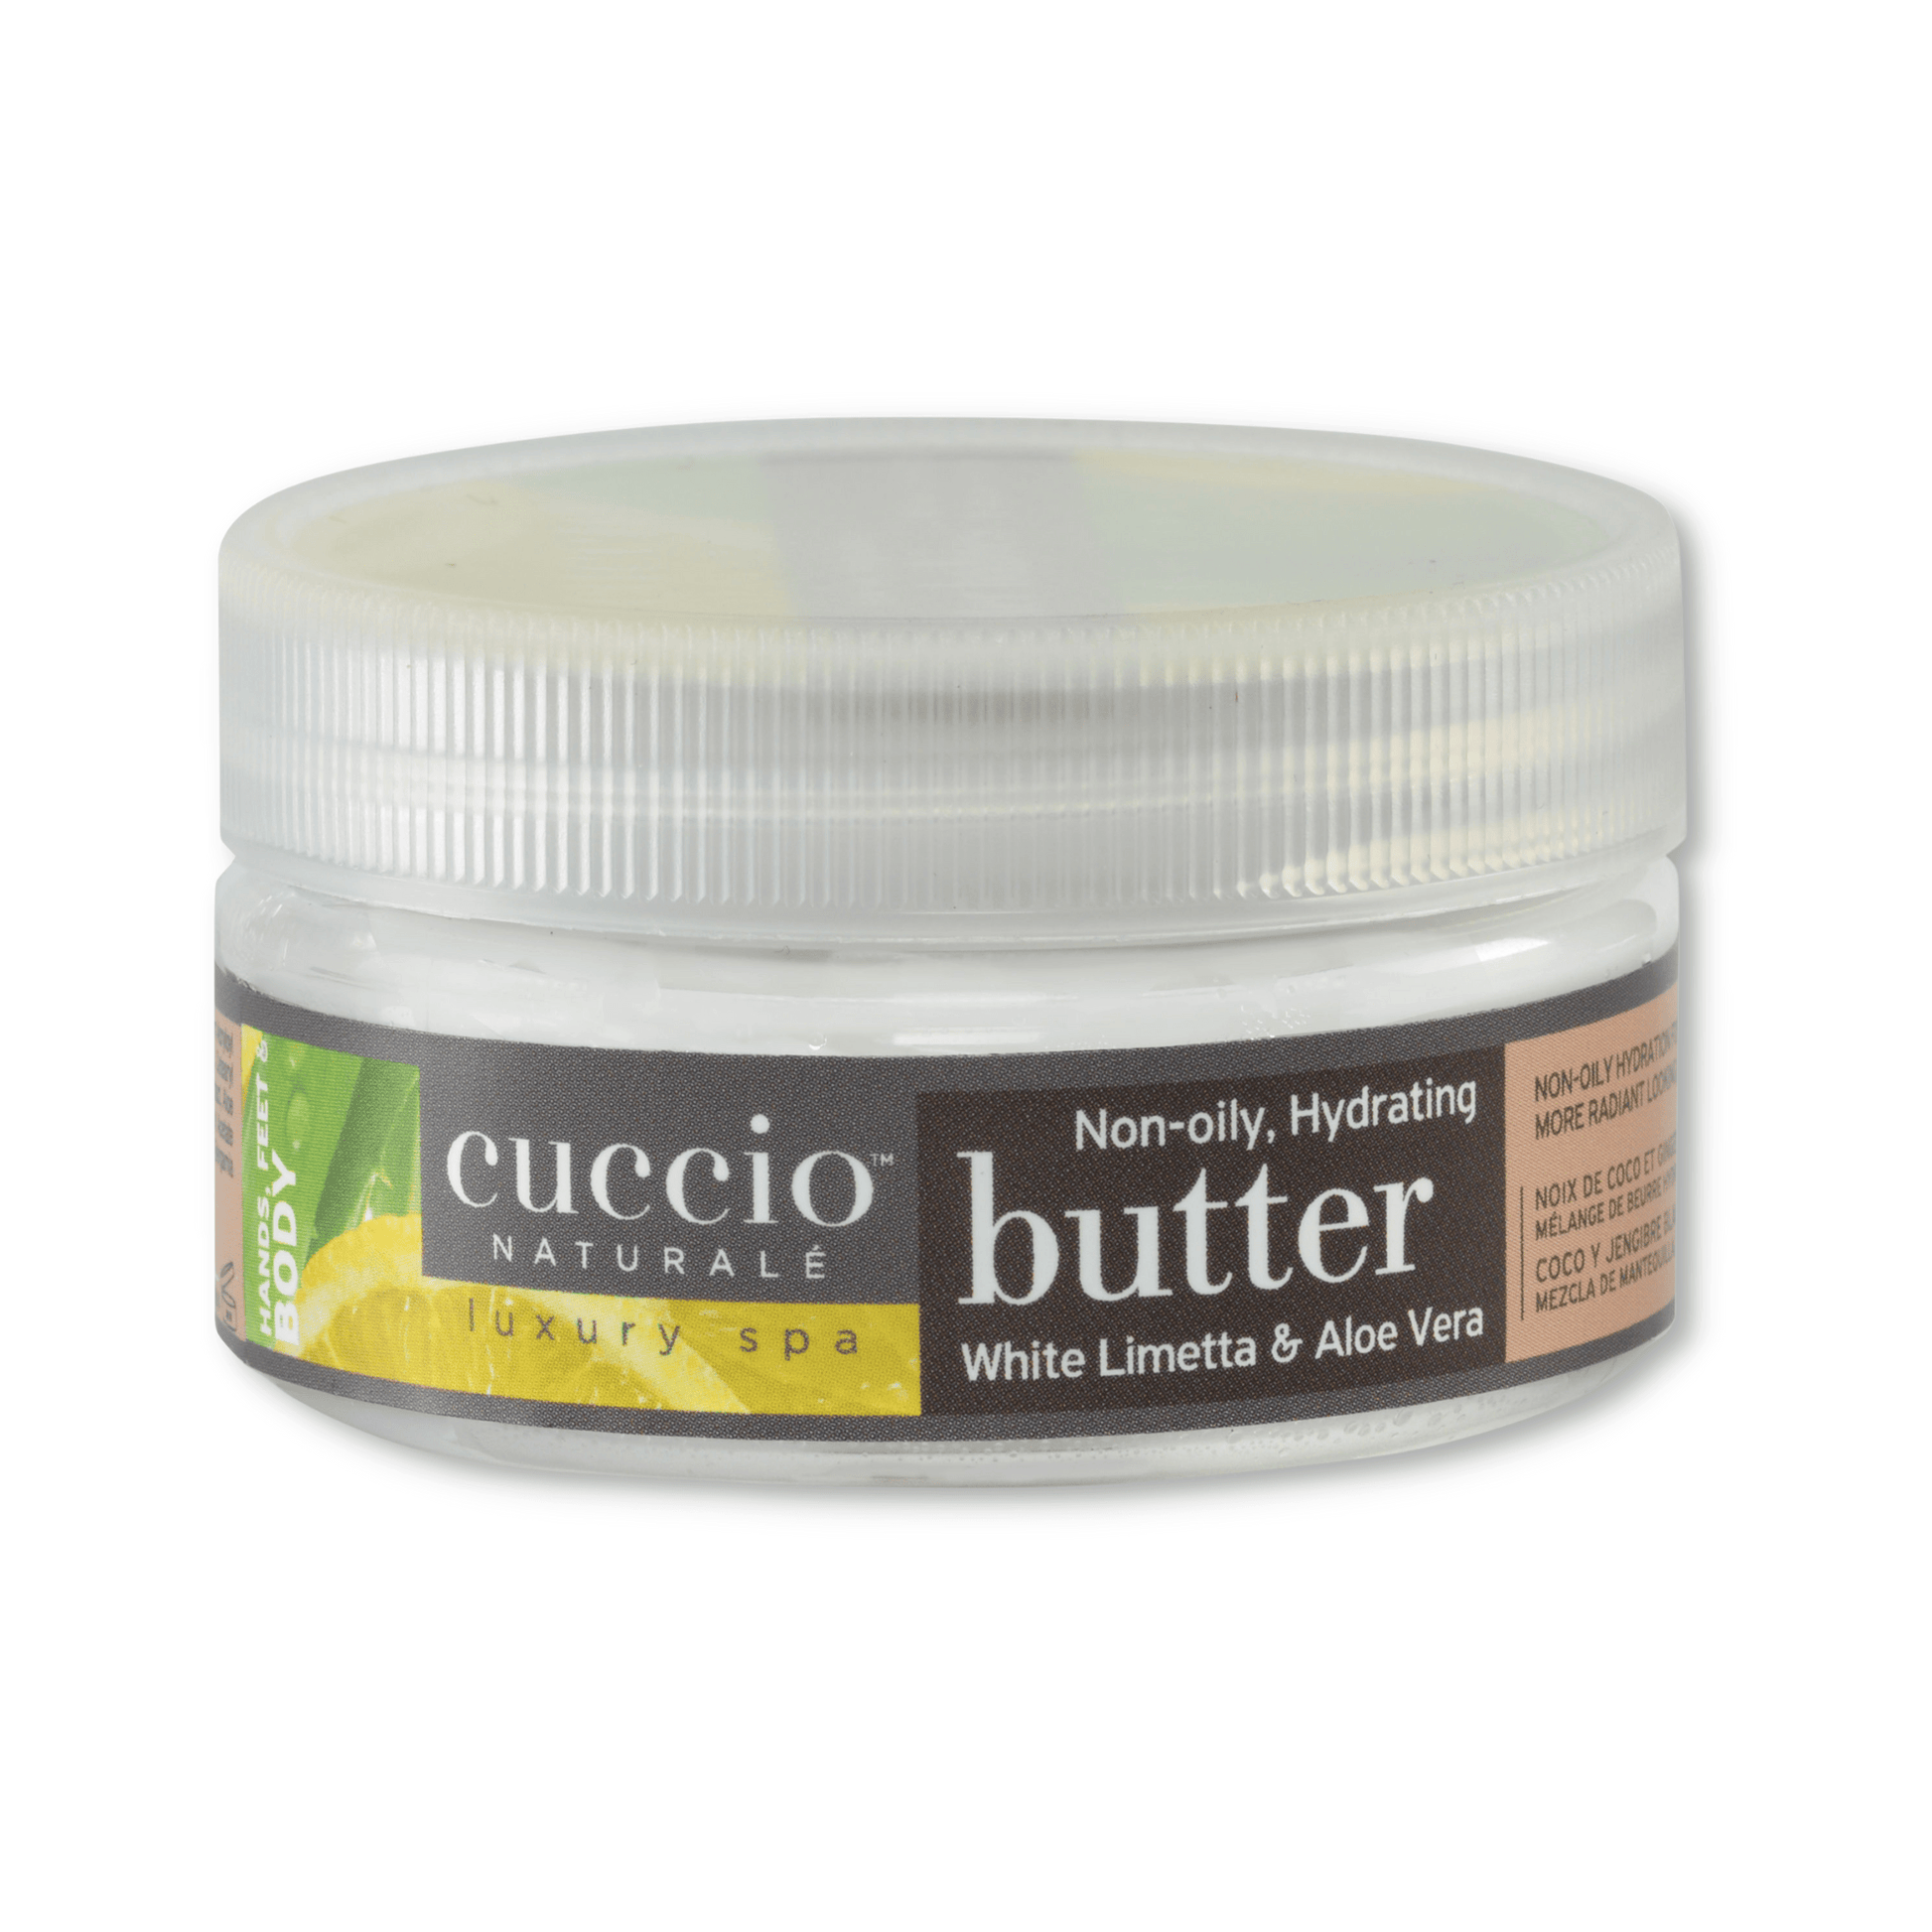 Cuccio Naturalé Hydrating Butter - White Limetta & Aloe Vera 42gr